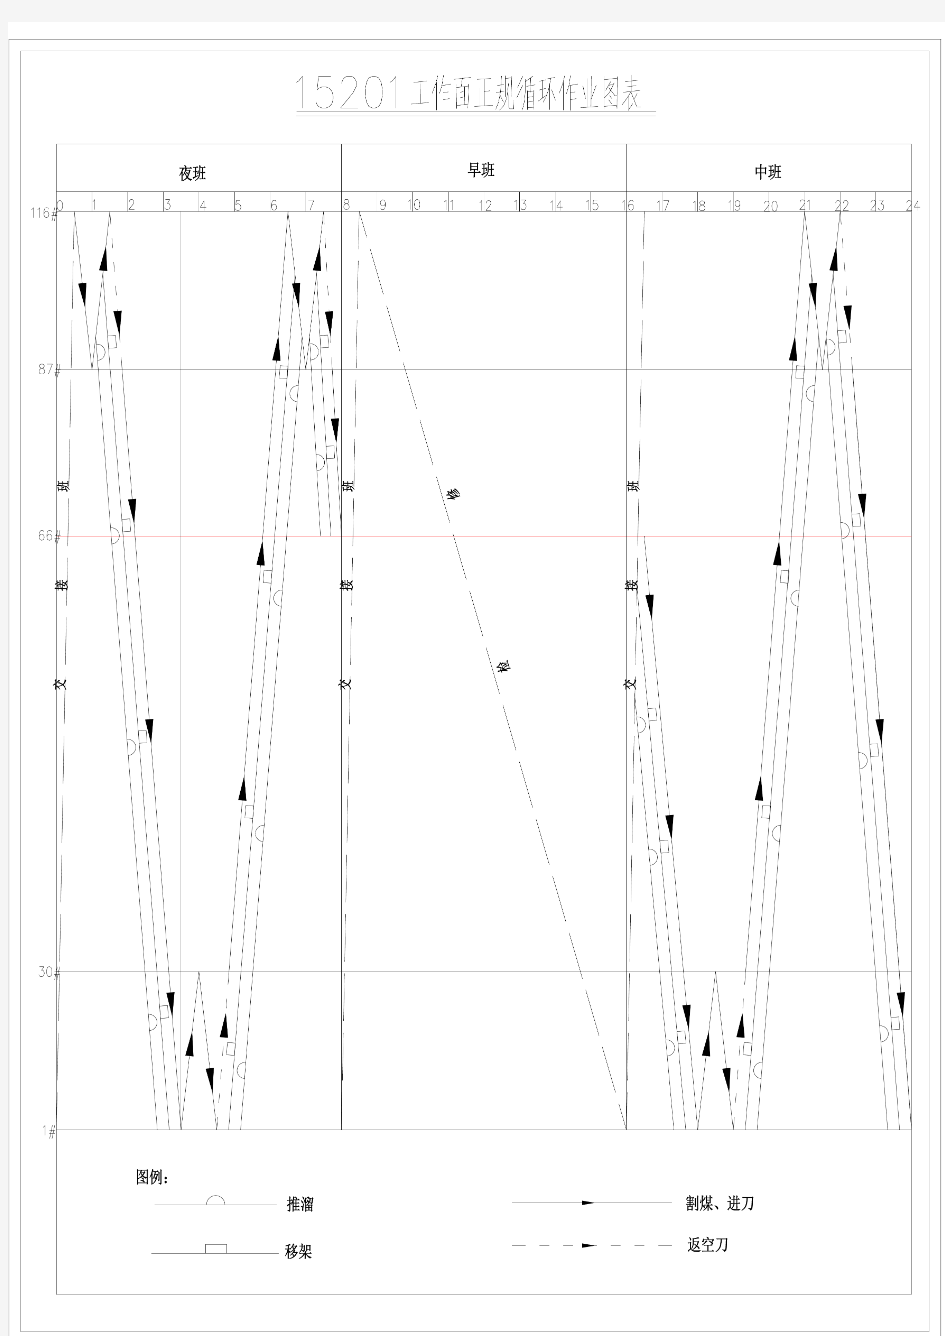 15201工作面正规循环作业图表(三刀)-Model